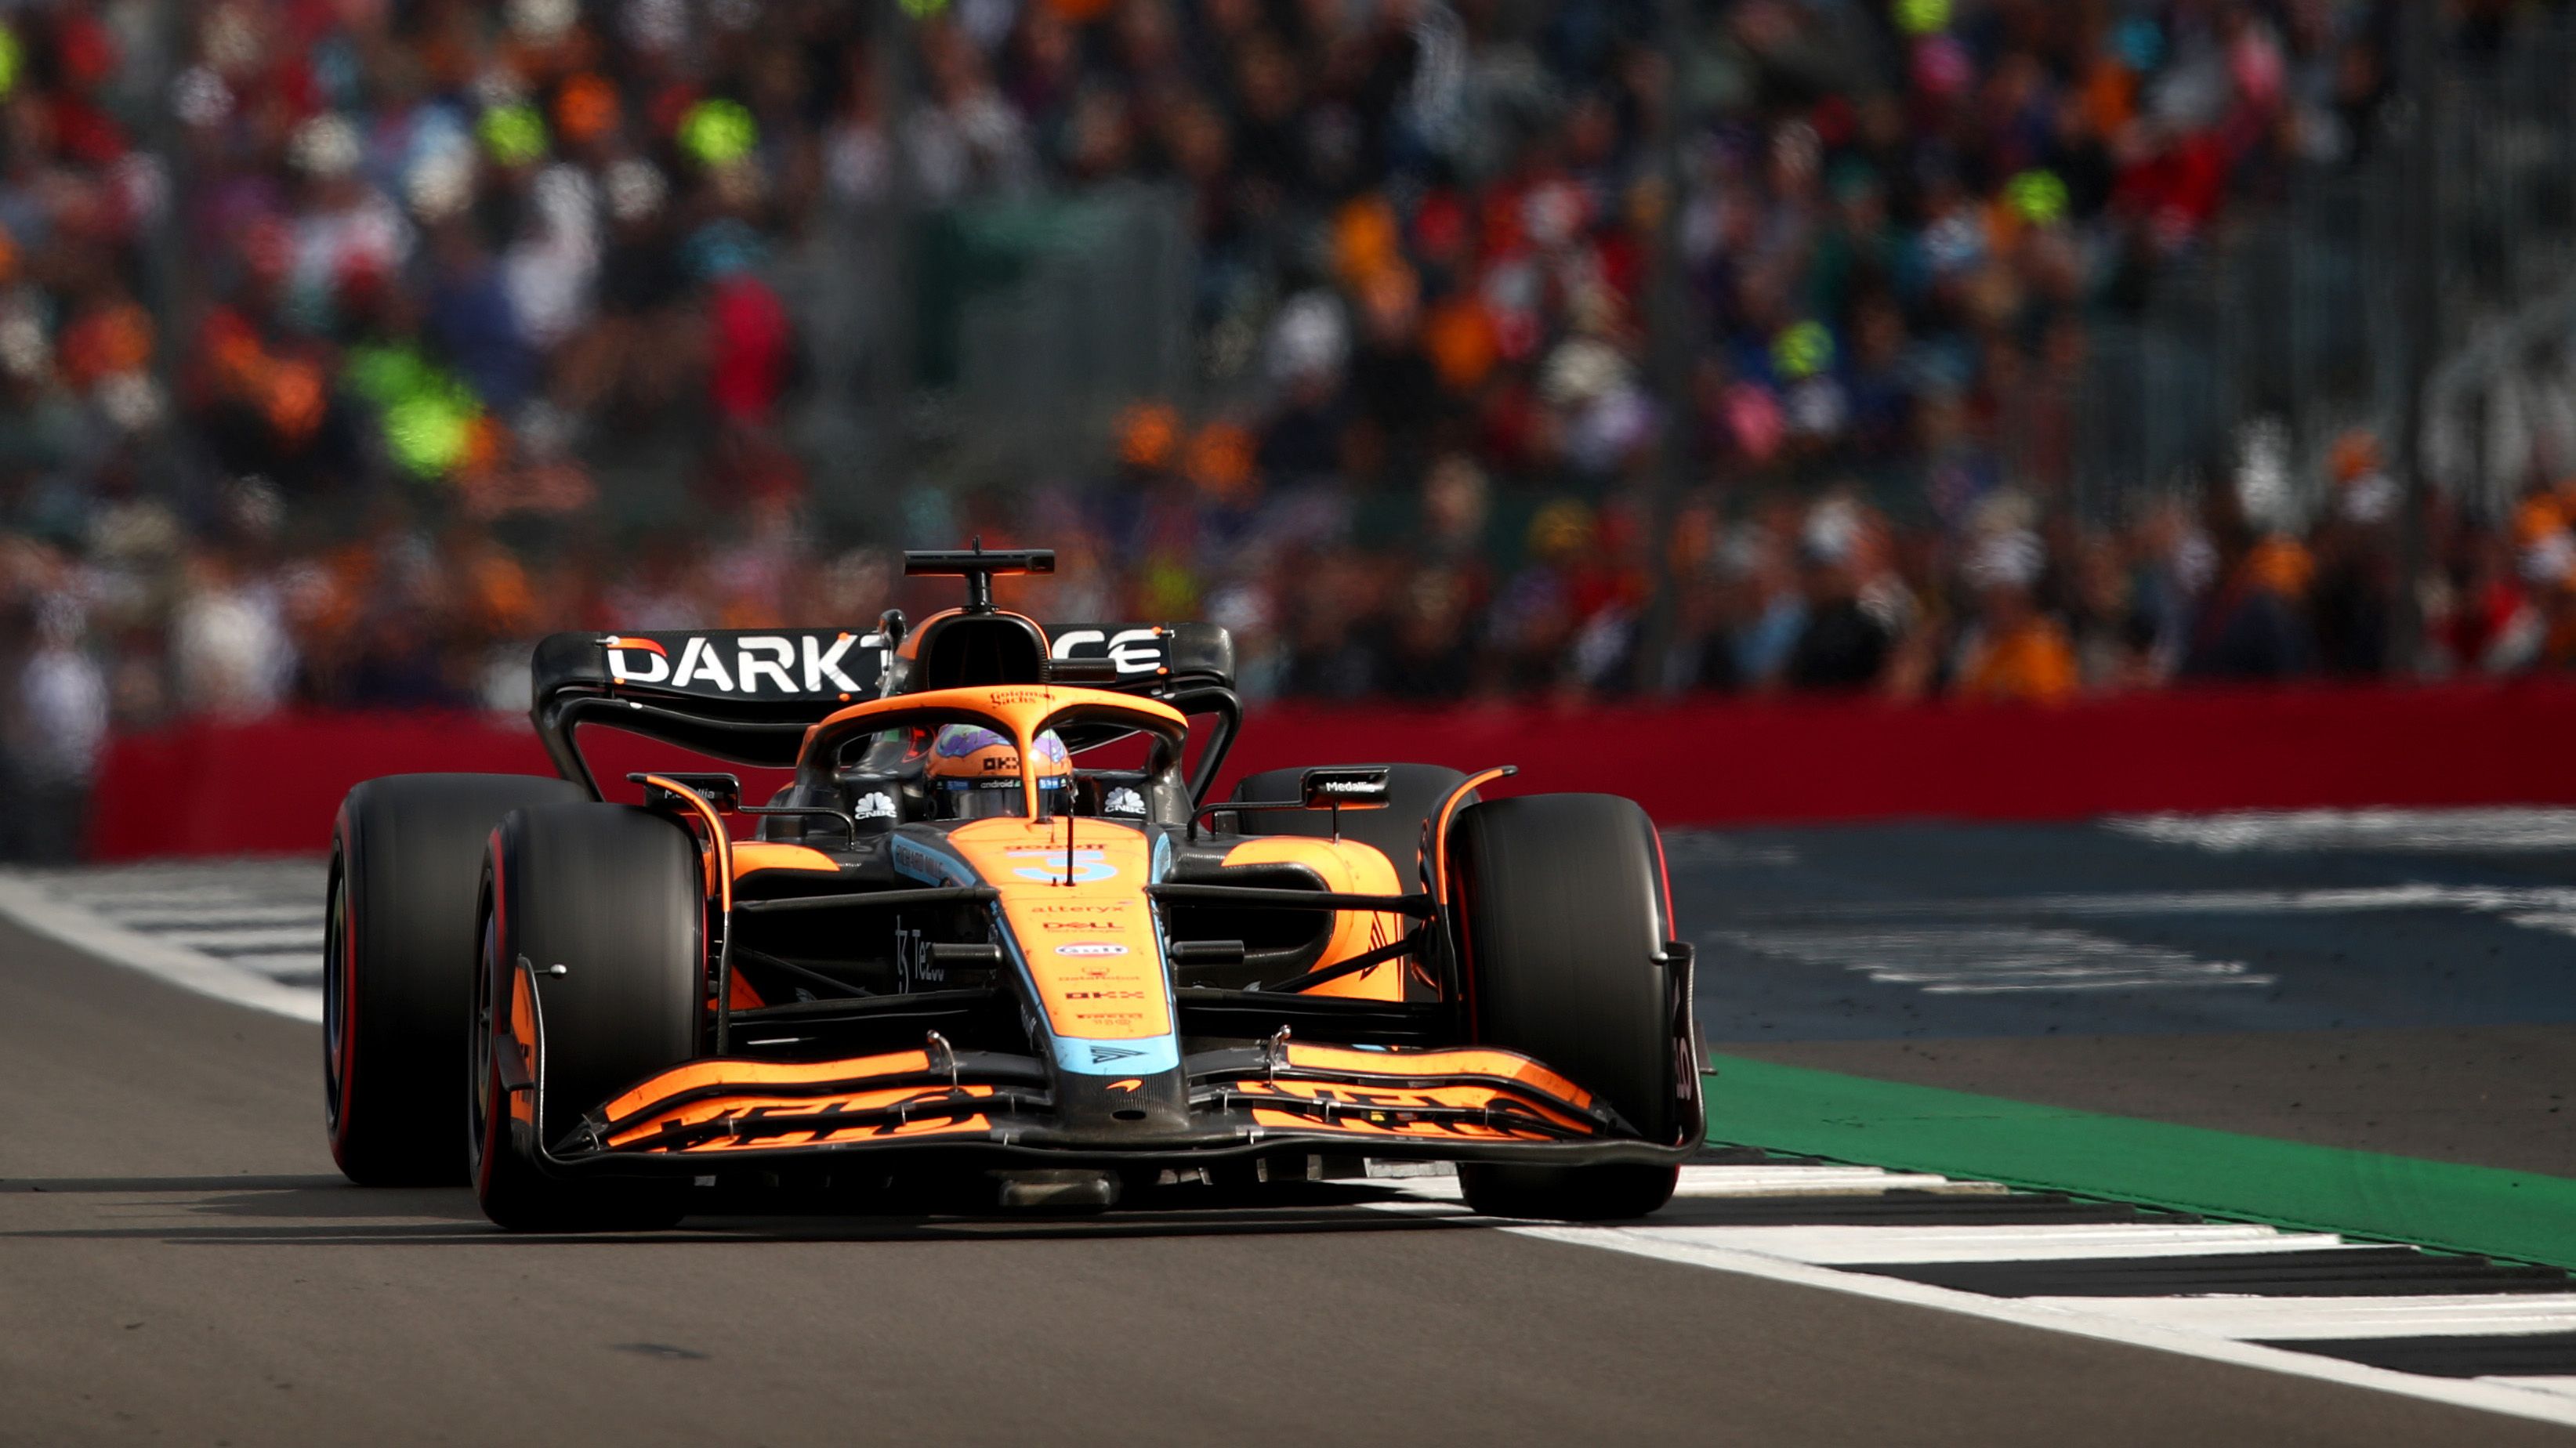 Pressure building on Daniel Ricciardo after 'lonely' British Grand Prix